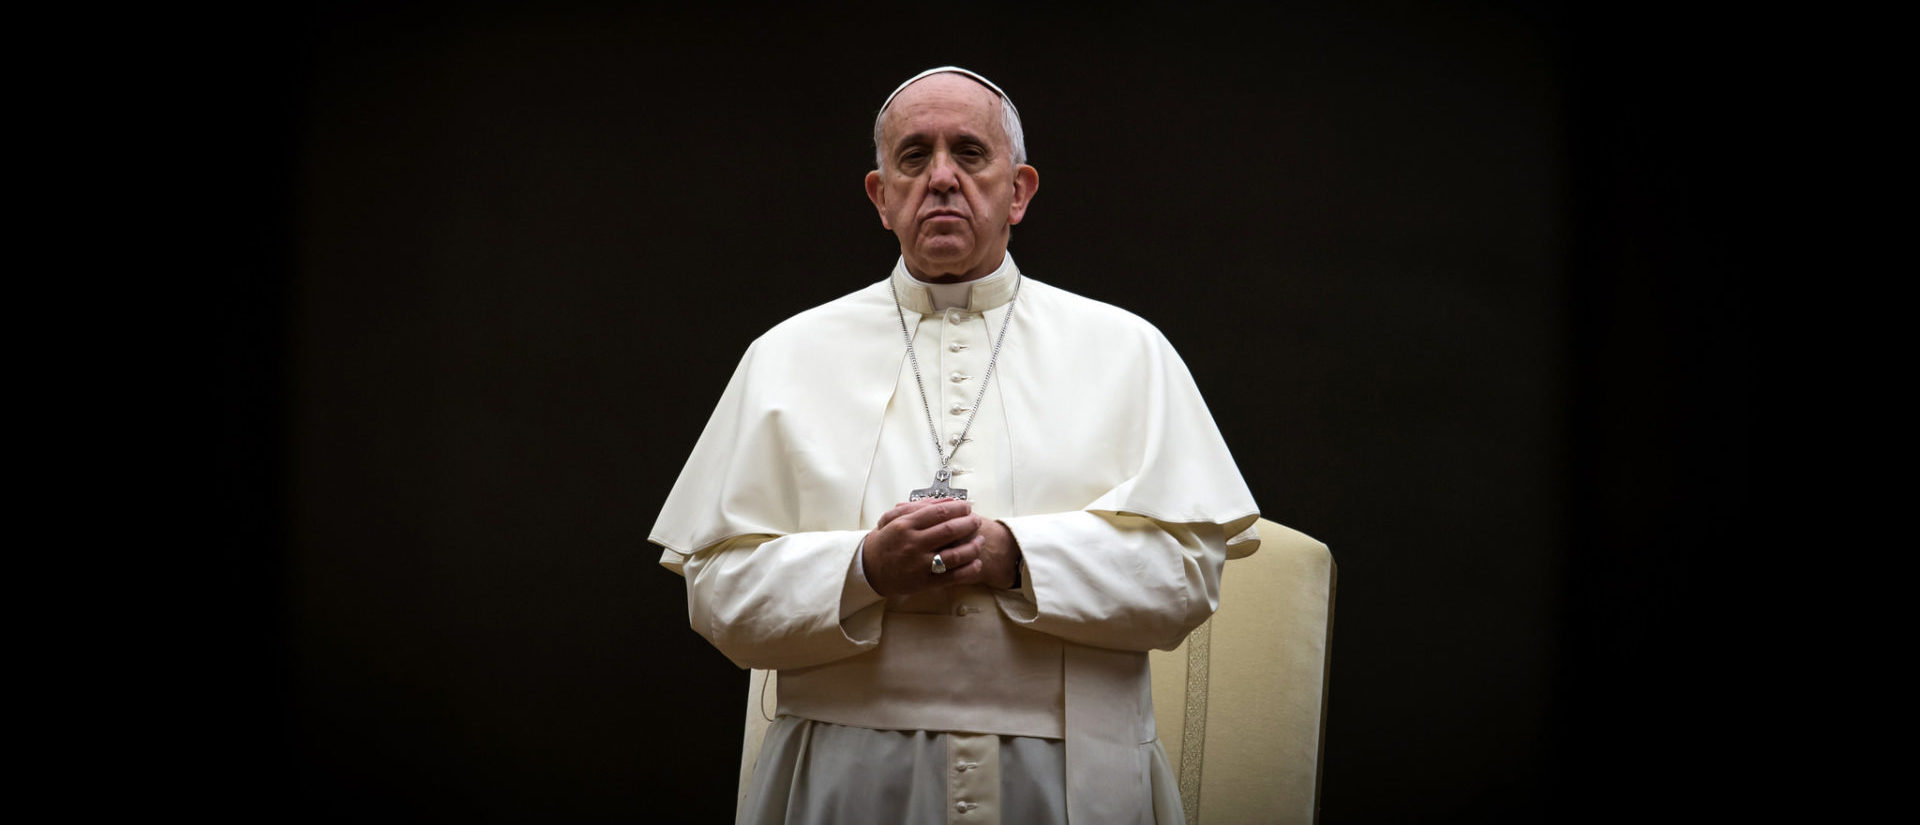 Le pape François a exprimé sa proximité avec le peuple israélien | © flickr/catholicism